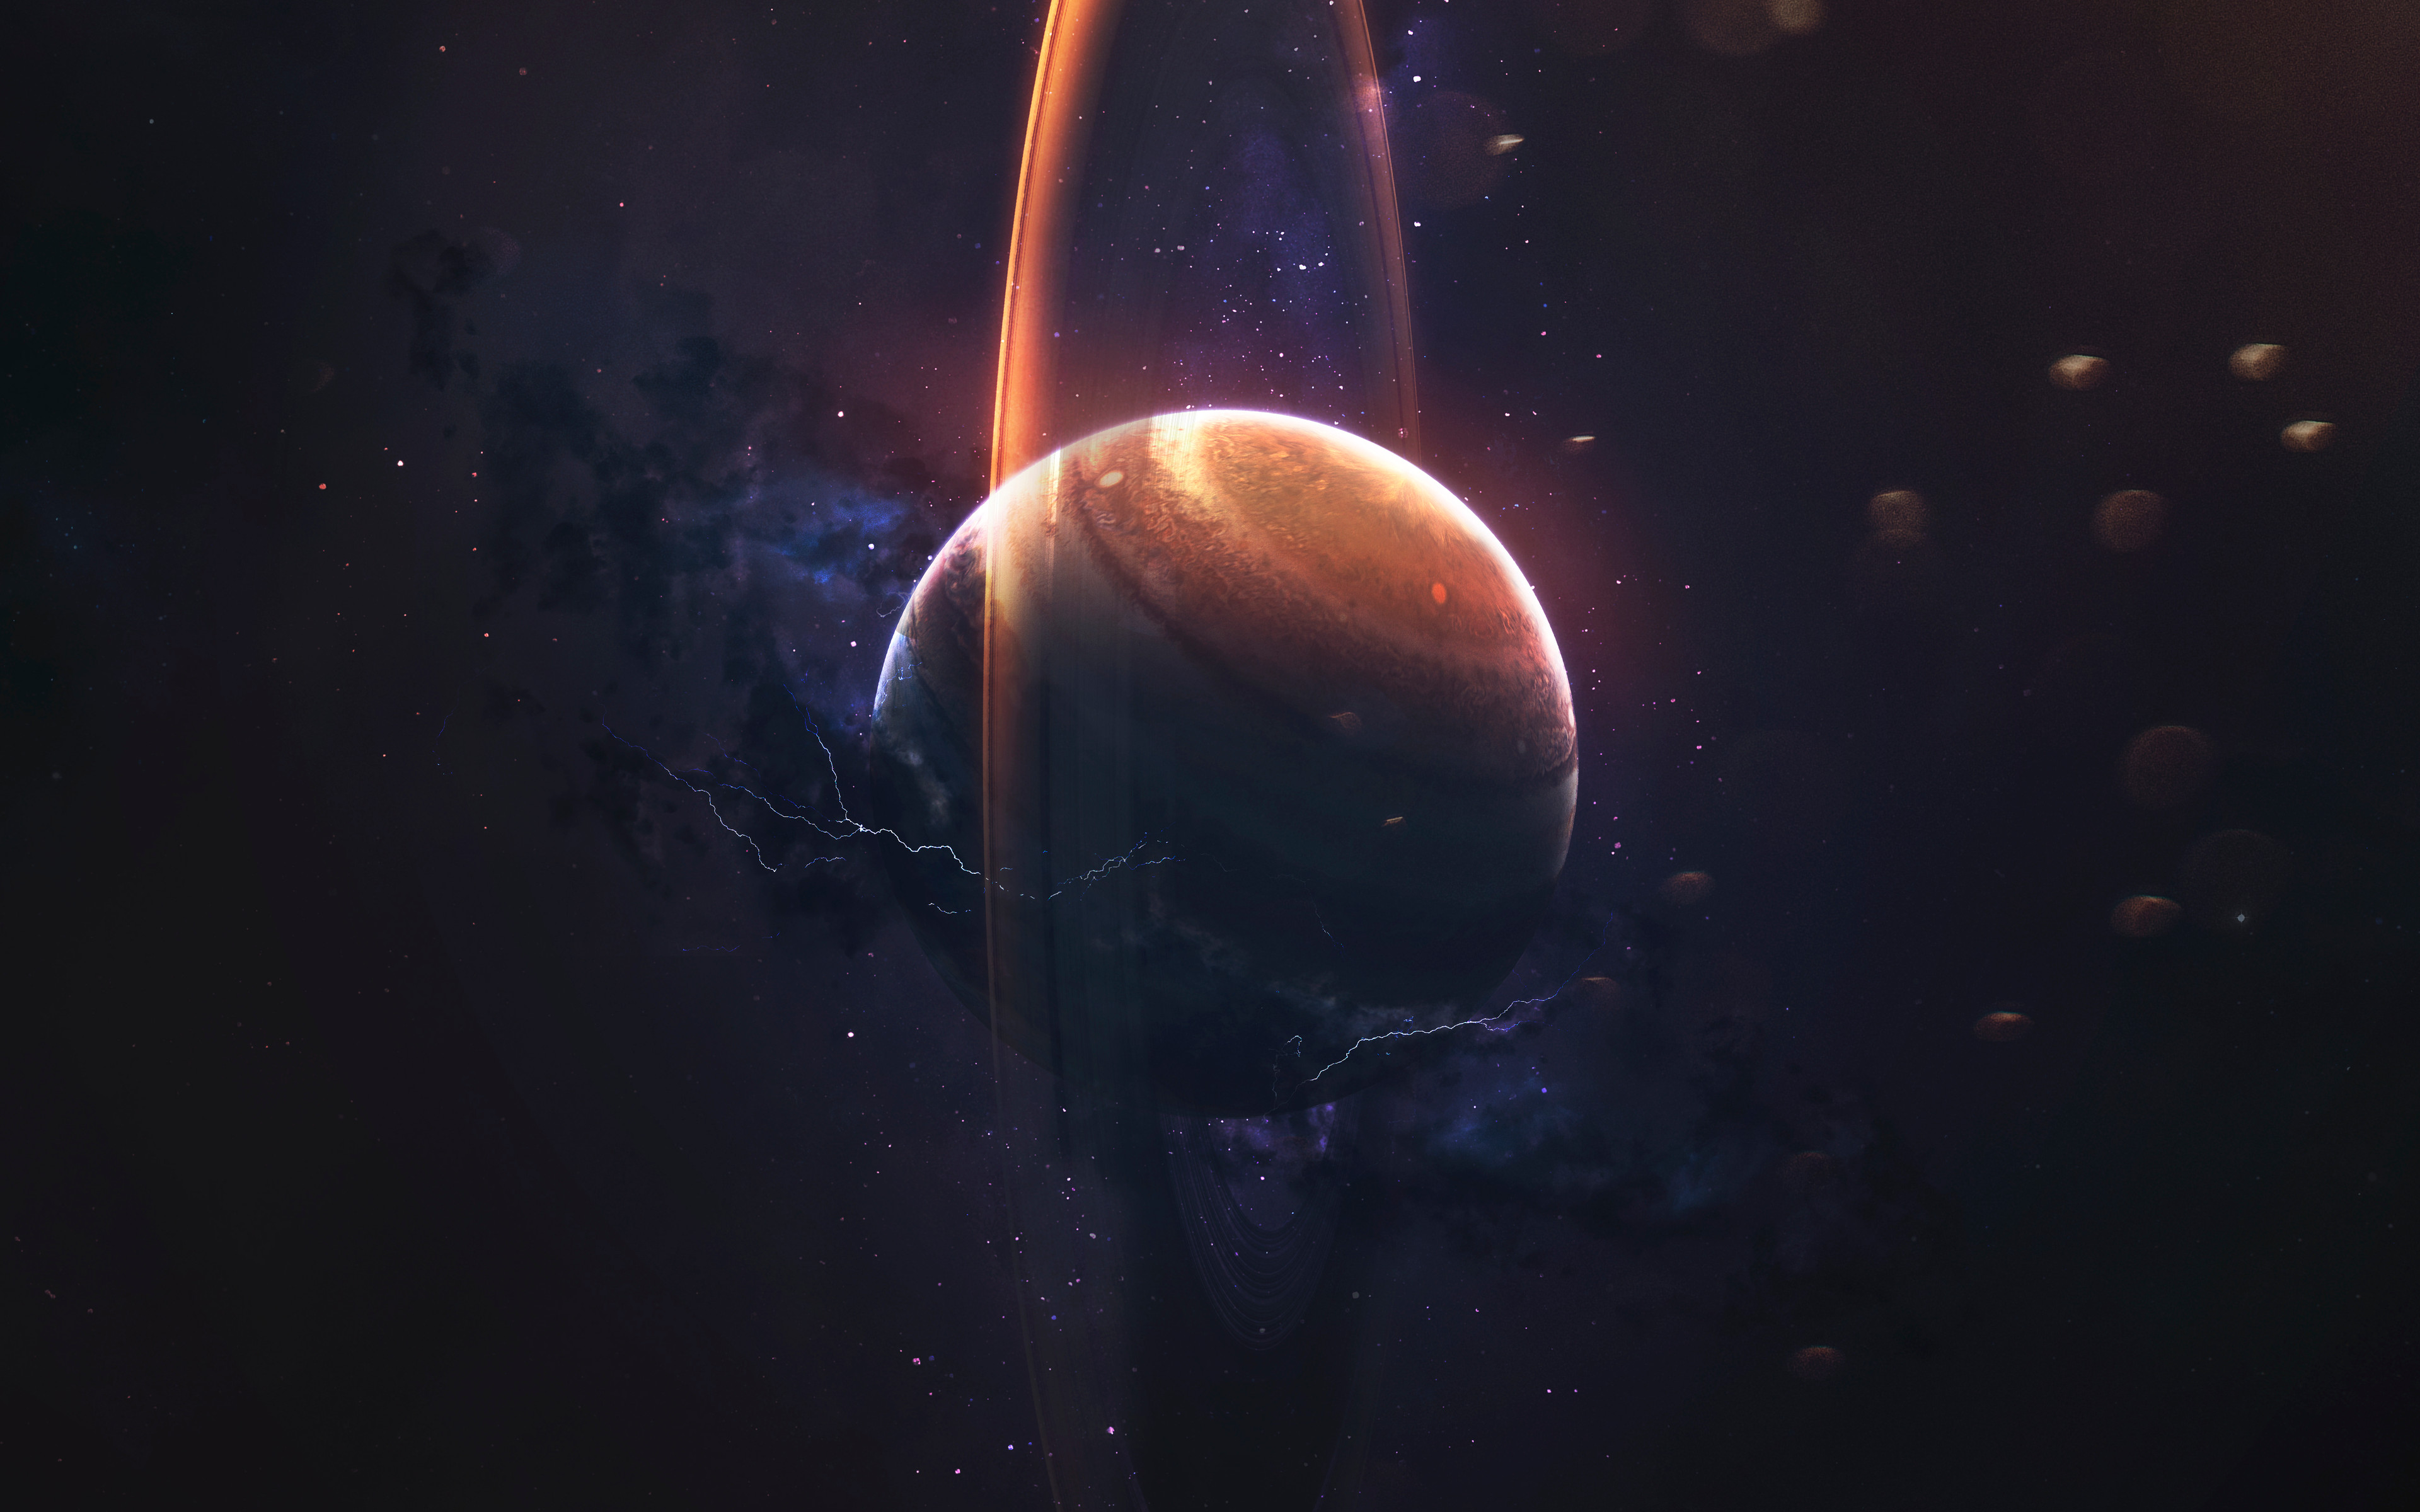 Digital Digital Art Artwork Illustration Render Space Art Galaxy Planet Jupiter Planetary Rings Star 3840x2400